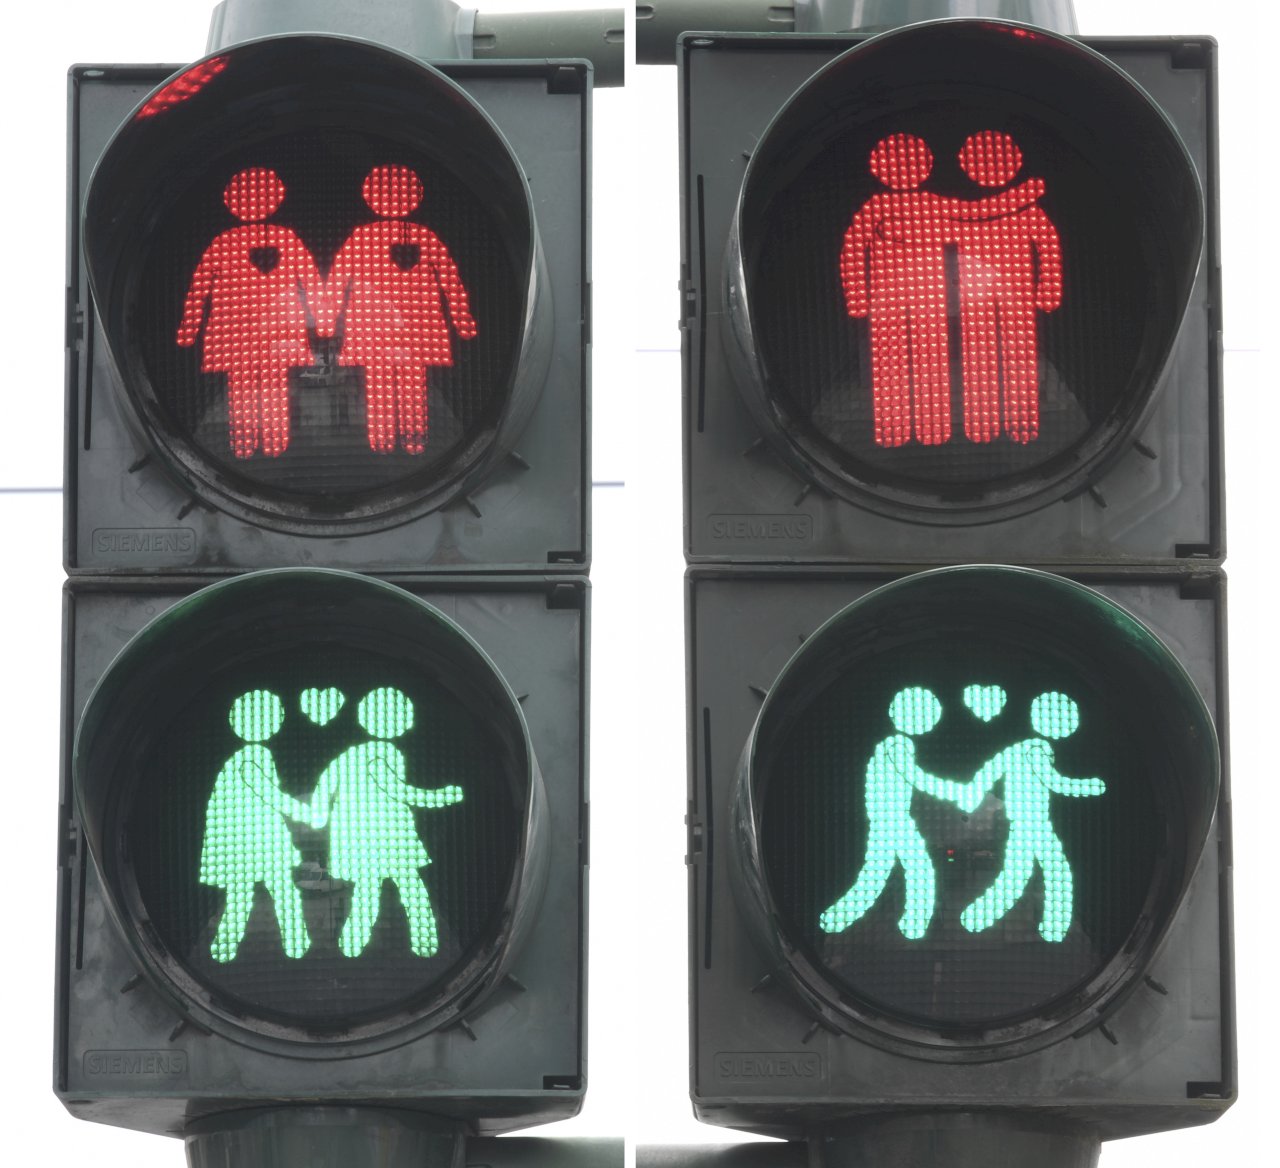 提倡多元價值 法蘭克福設同性伴侶紅綠燈